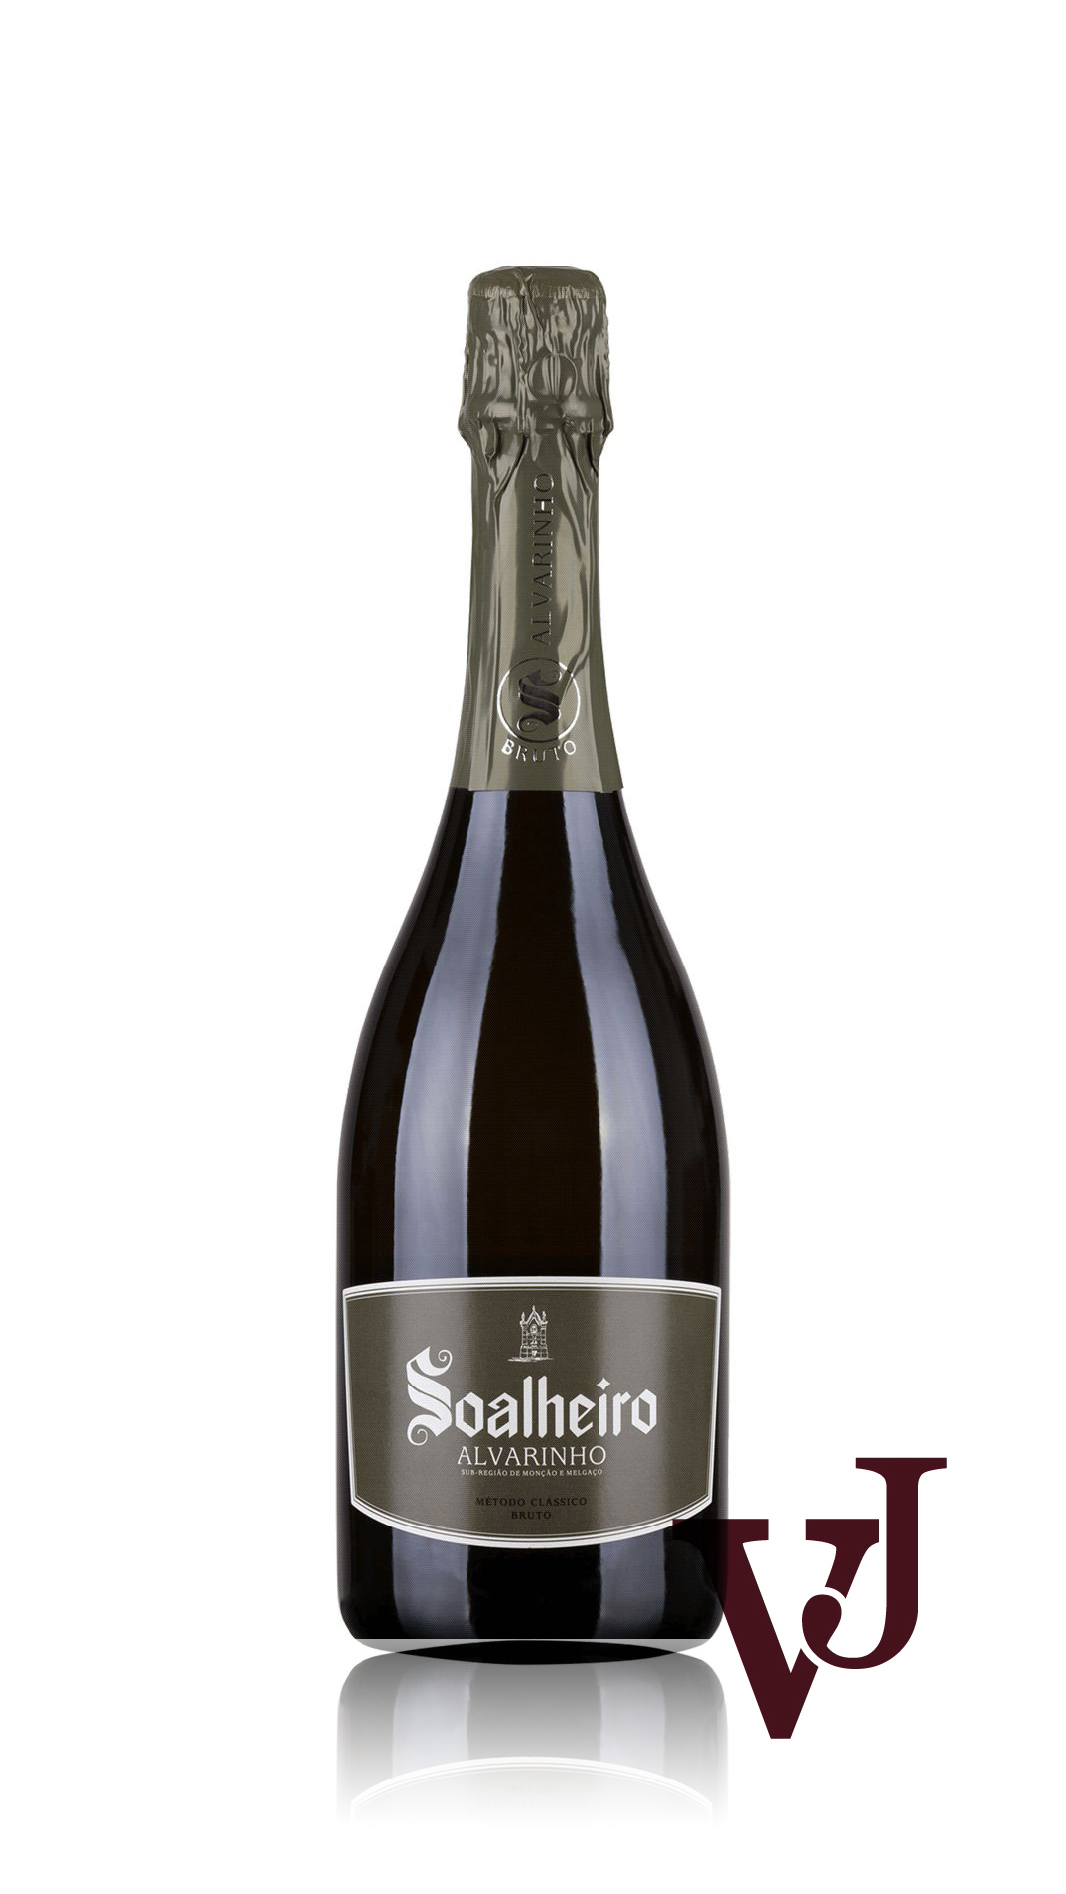 Mousserande Vin - Soalheiro artikel nummer 5664601 från producenten Soalheiro från området Portugal - Vinjournalen.se